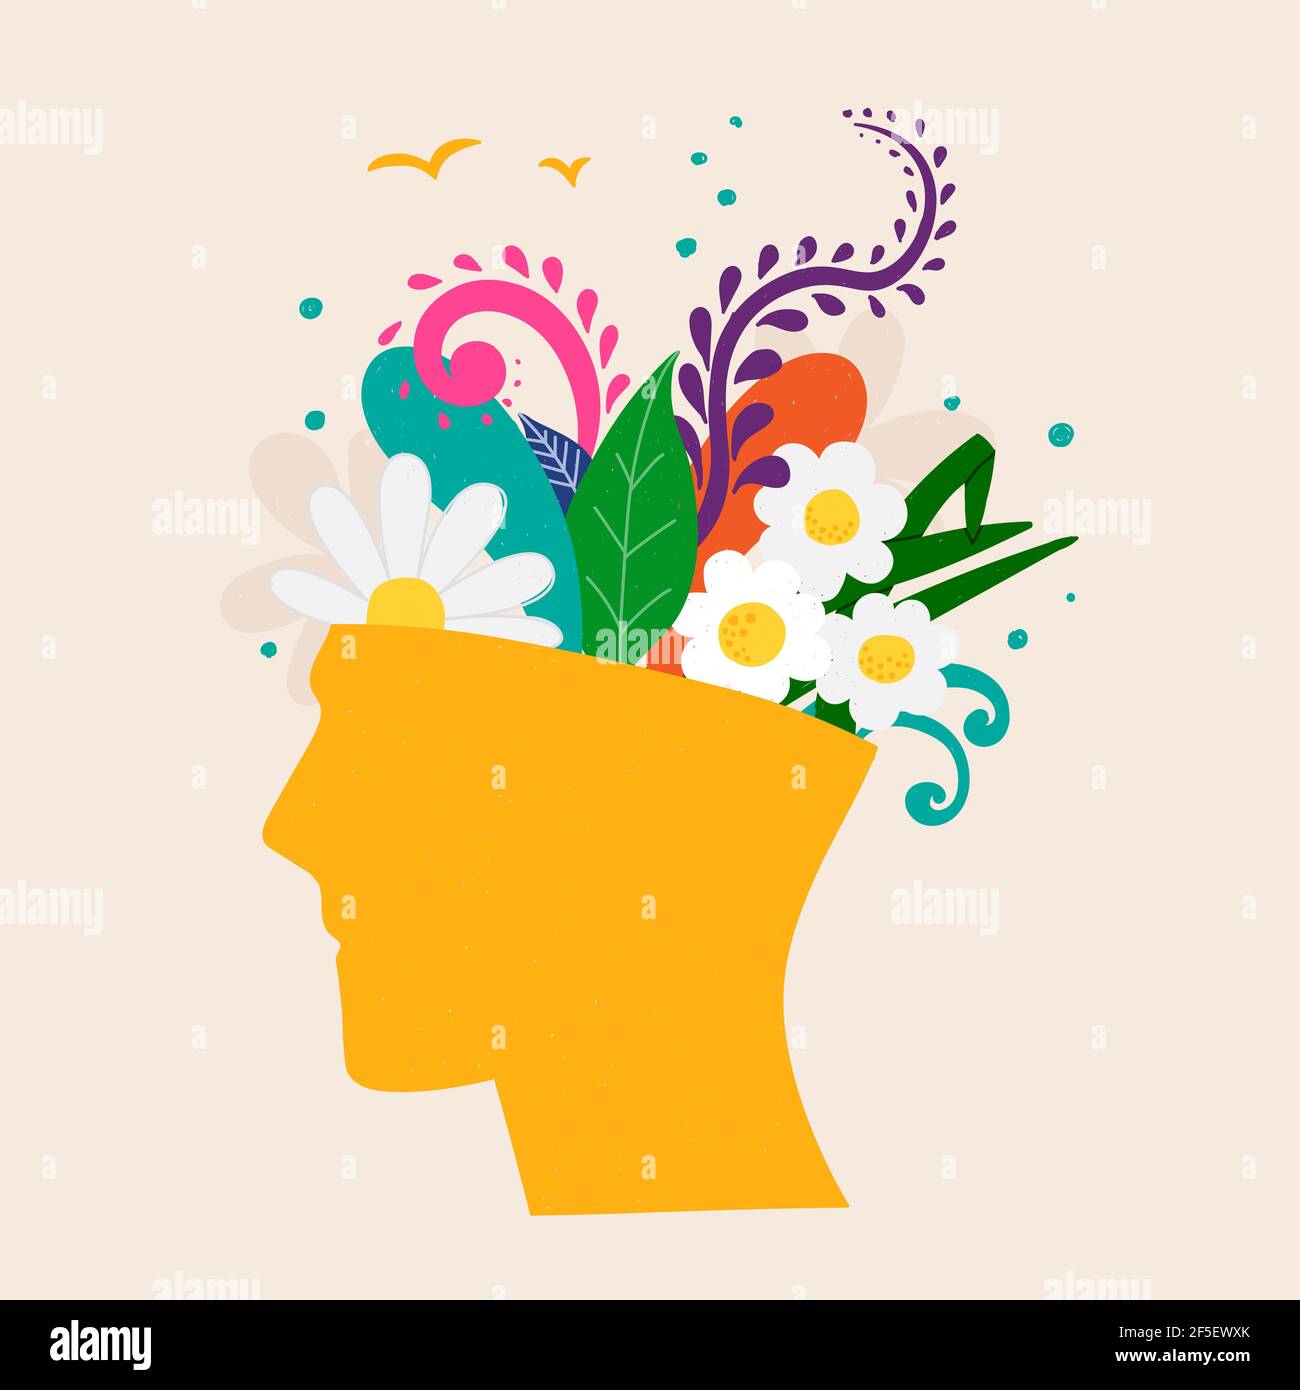 Concepto de salud mental. Imagen abstracta de una cabeza con flores en el interior. Plantas, flores y hojas como símbolo de inspiración, calma, mental favorable Ilustración del Vector